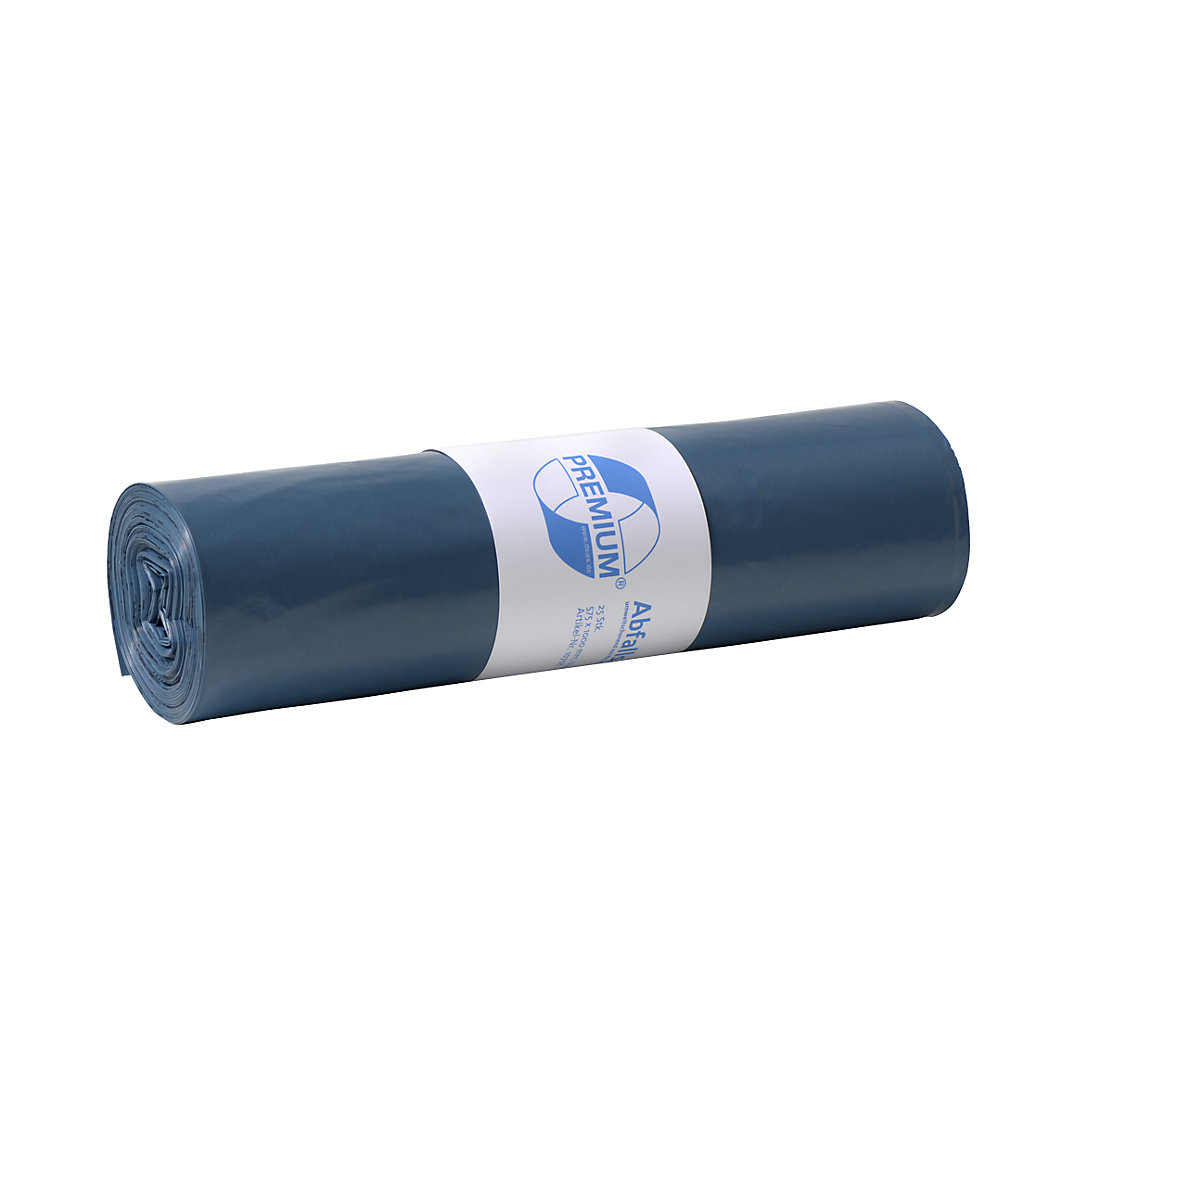 Szabványos hulladékgyűjtő zsákok, LDPE, 70 l, cs. e. 250 db, szé x ma 575 x 1000 mm, anyagvastagság 40 µm, kék